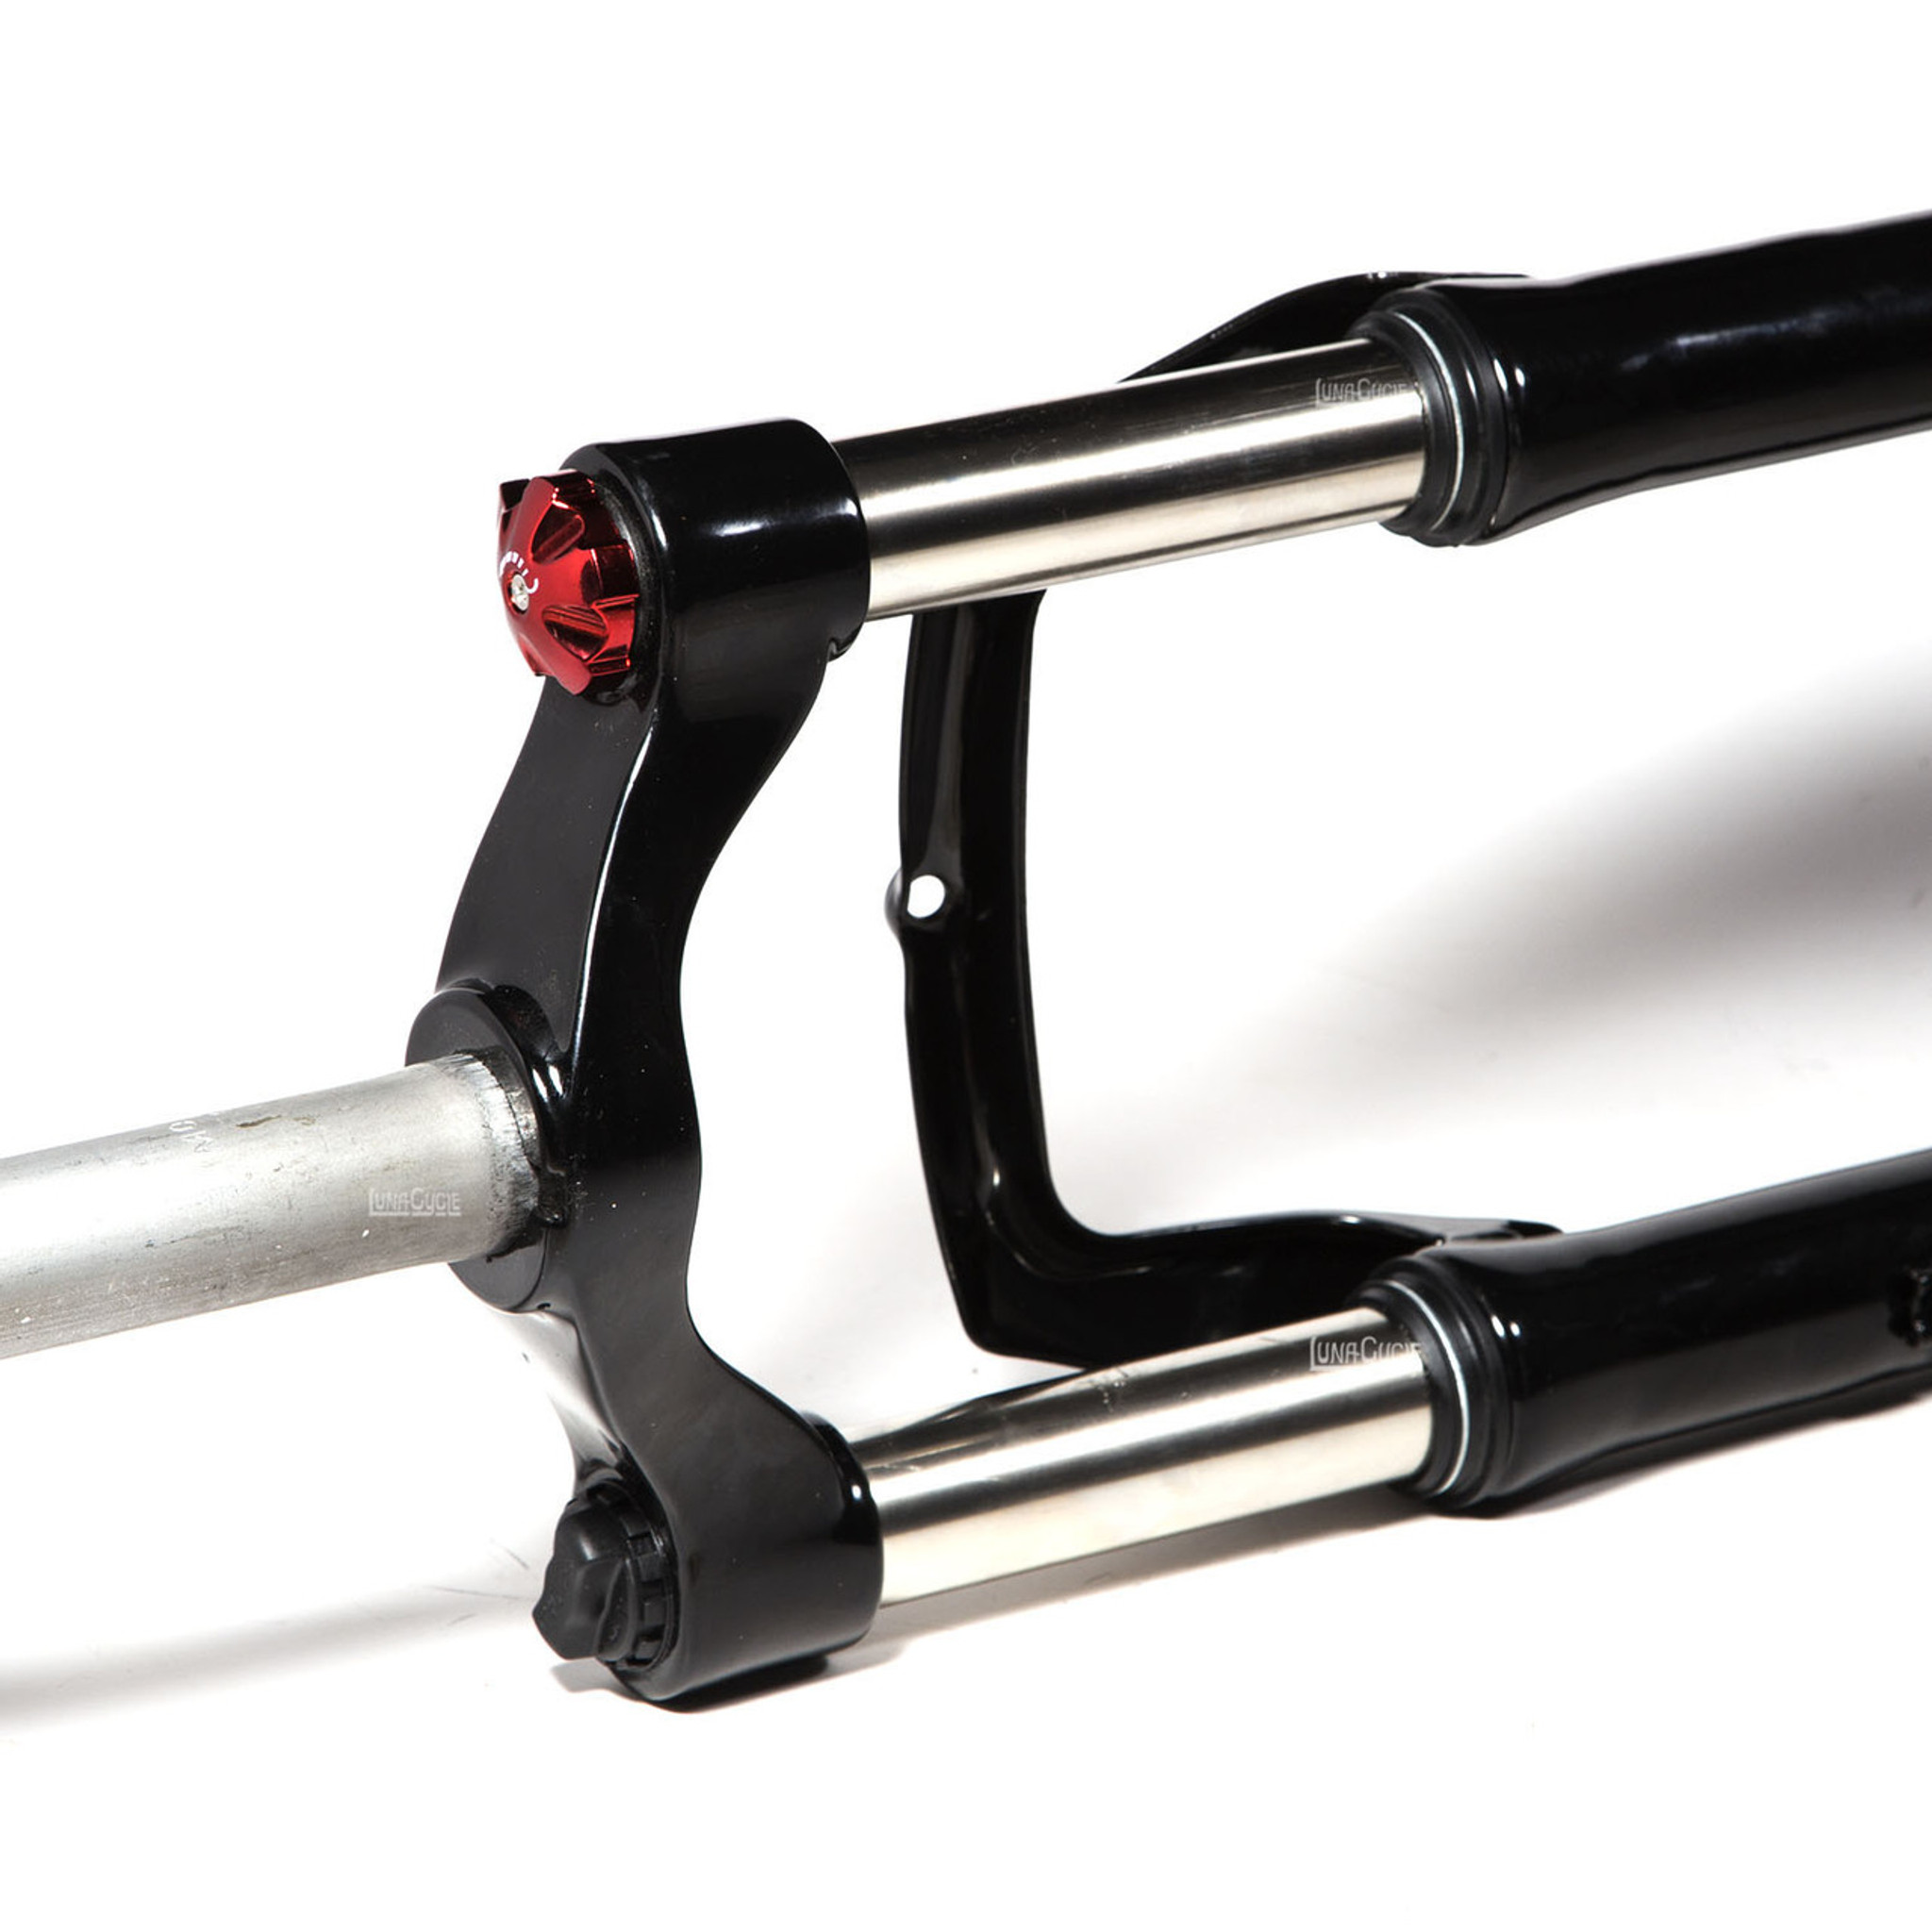 fat bike suspension fork for sale